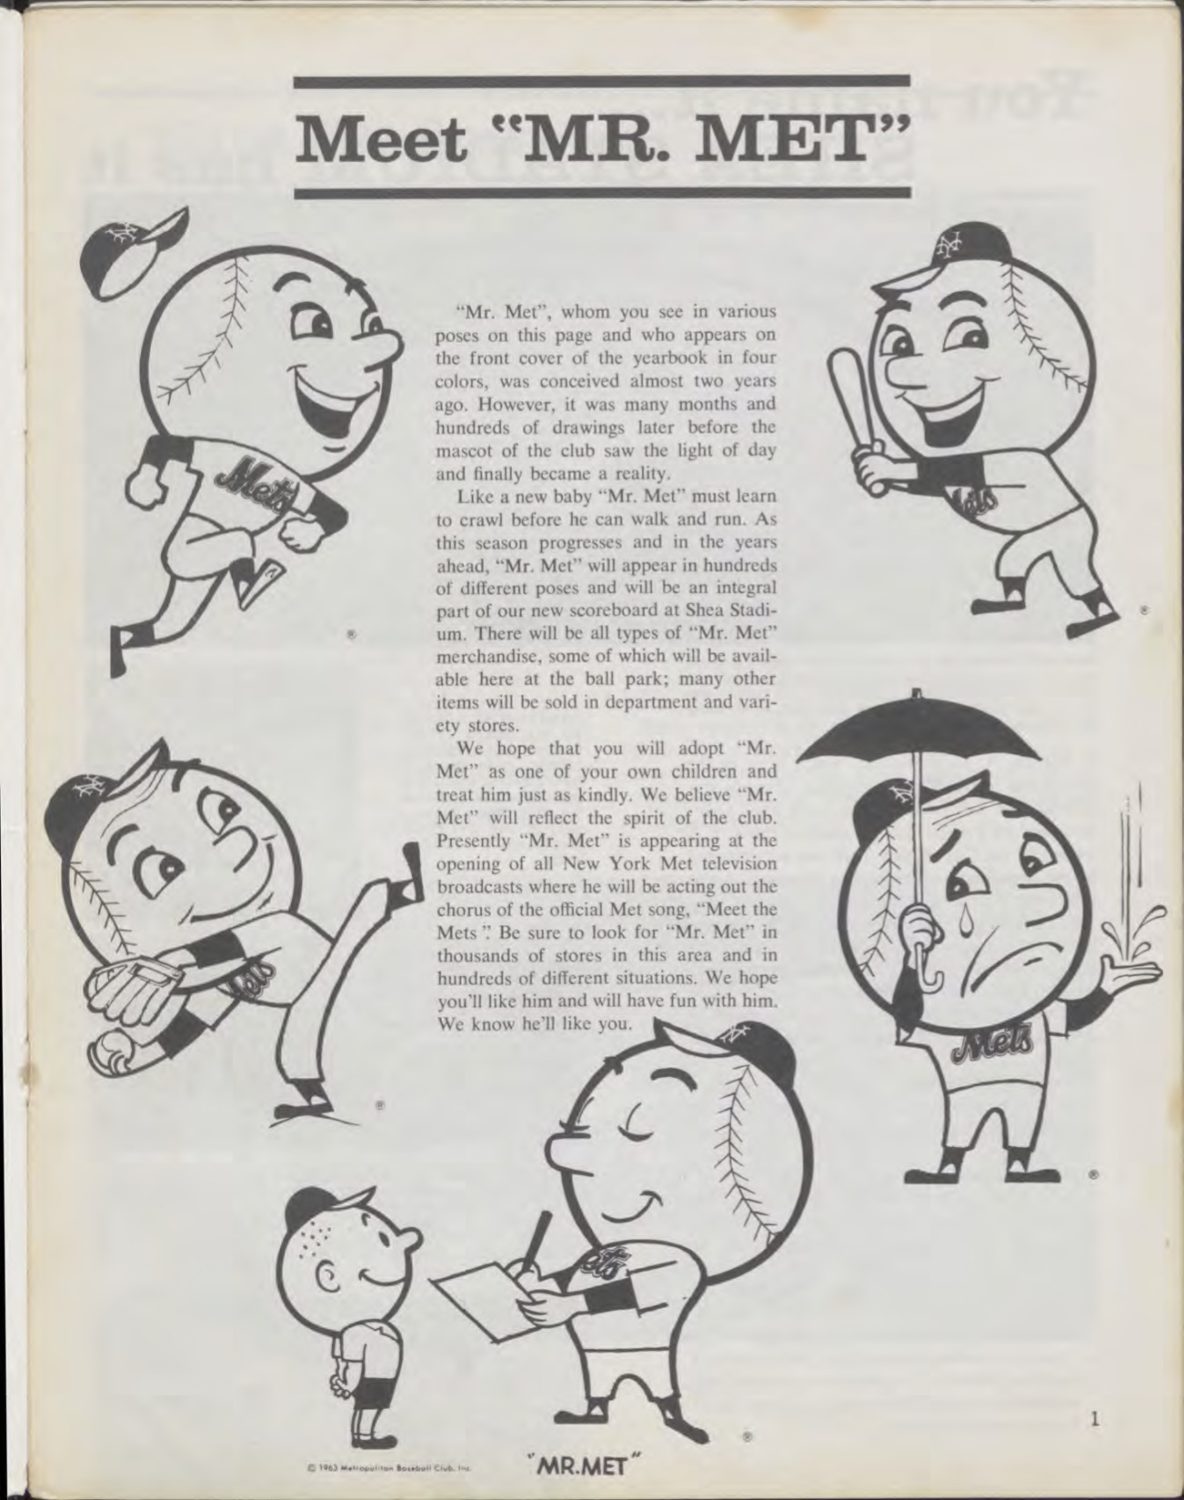 1963 Mets Yearbook Introduces Mr. Met